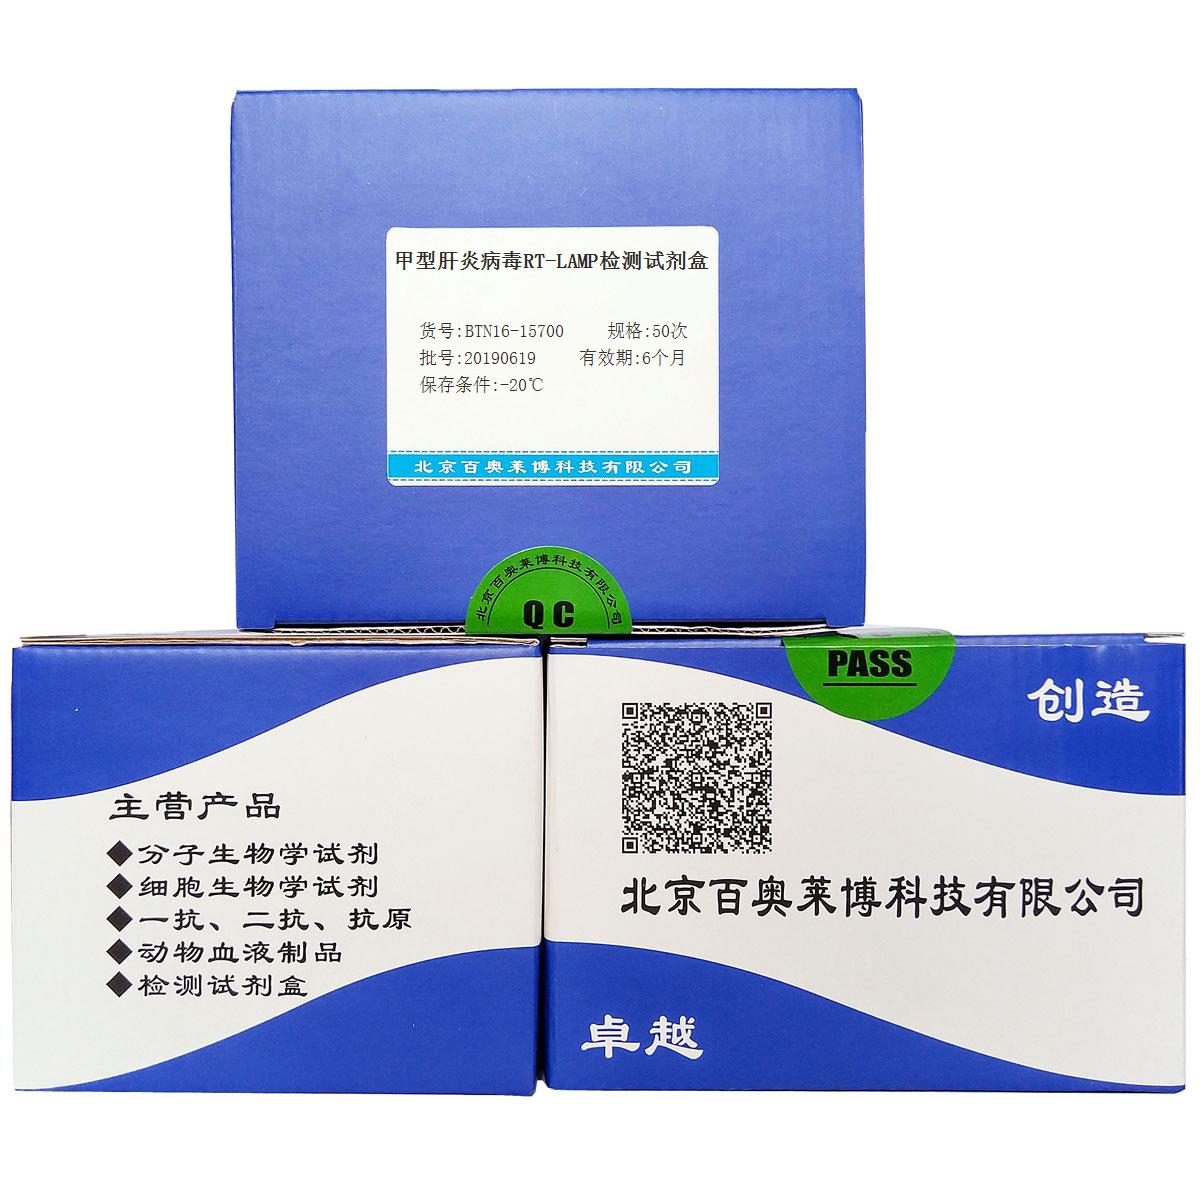 甲型肝炎病毒RT-LAMP检测试剂盒北京供应商